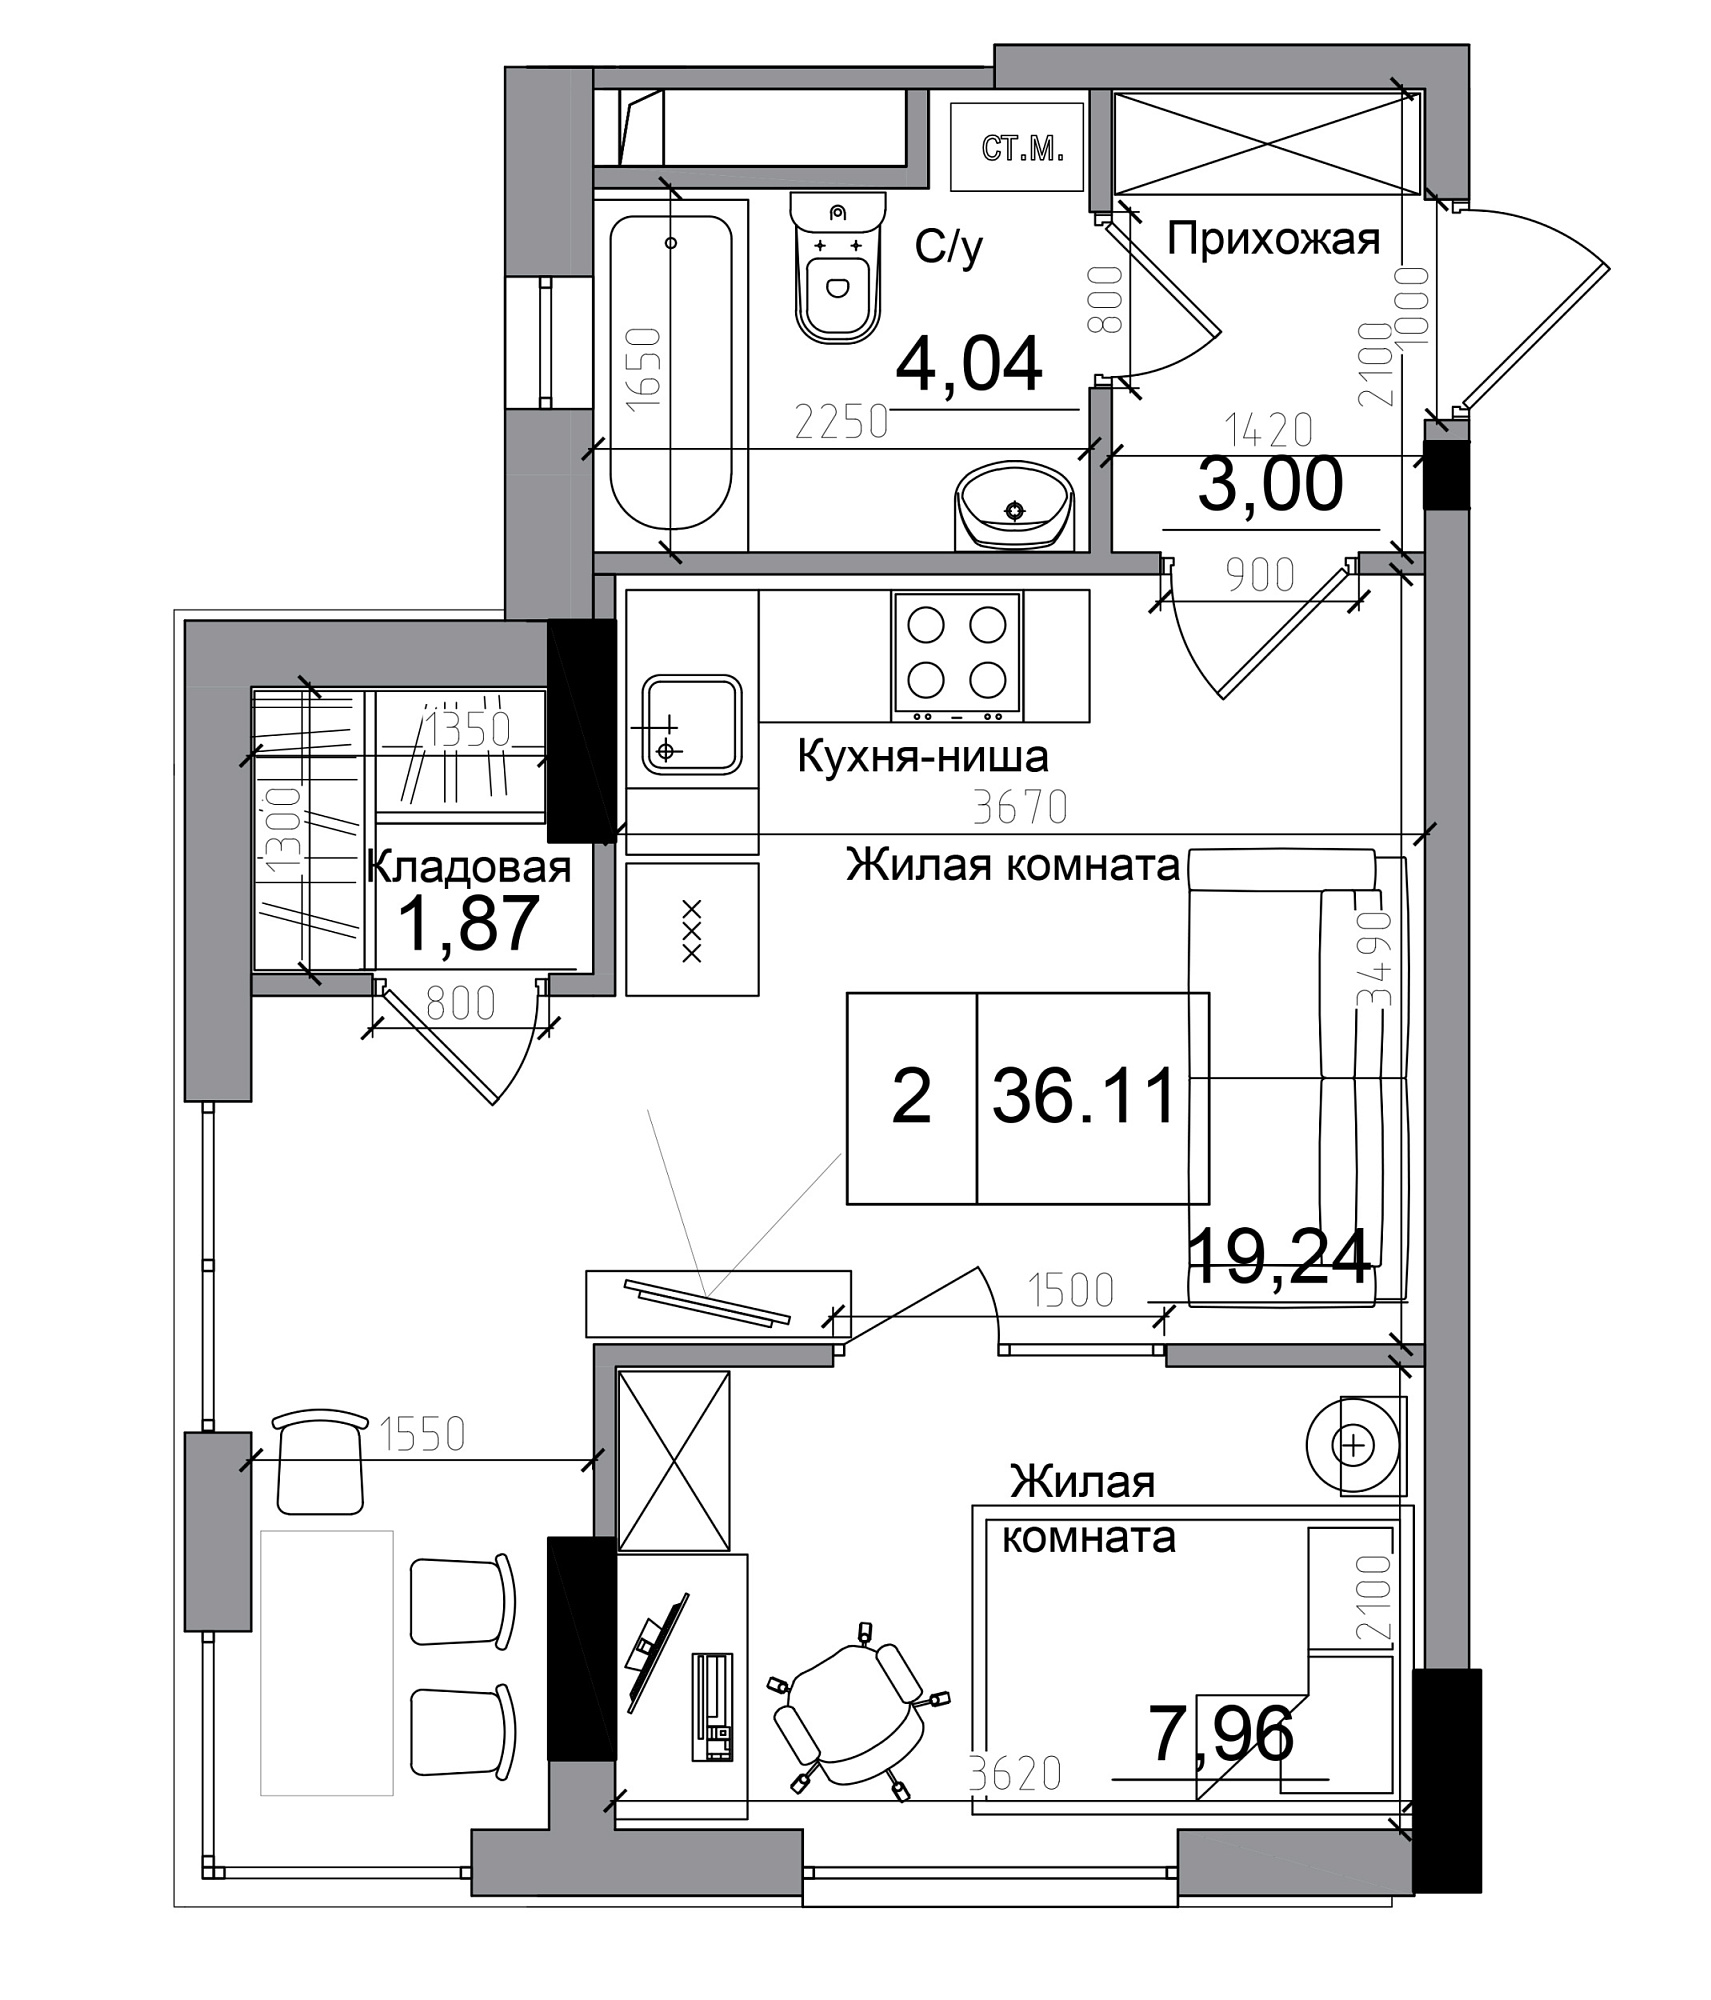 Планировка 1-к квартира площей 36.11м2, AB-11-12/00004.